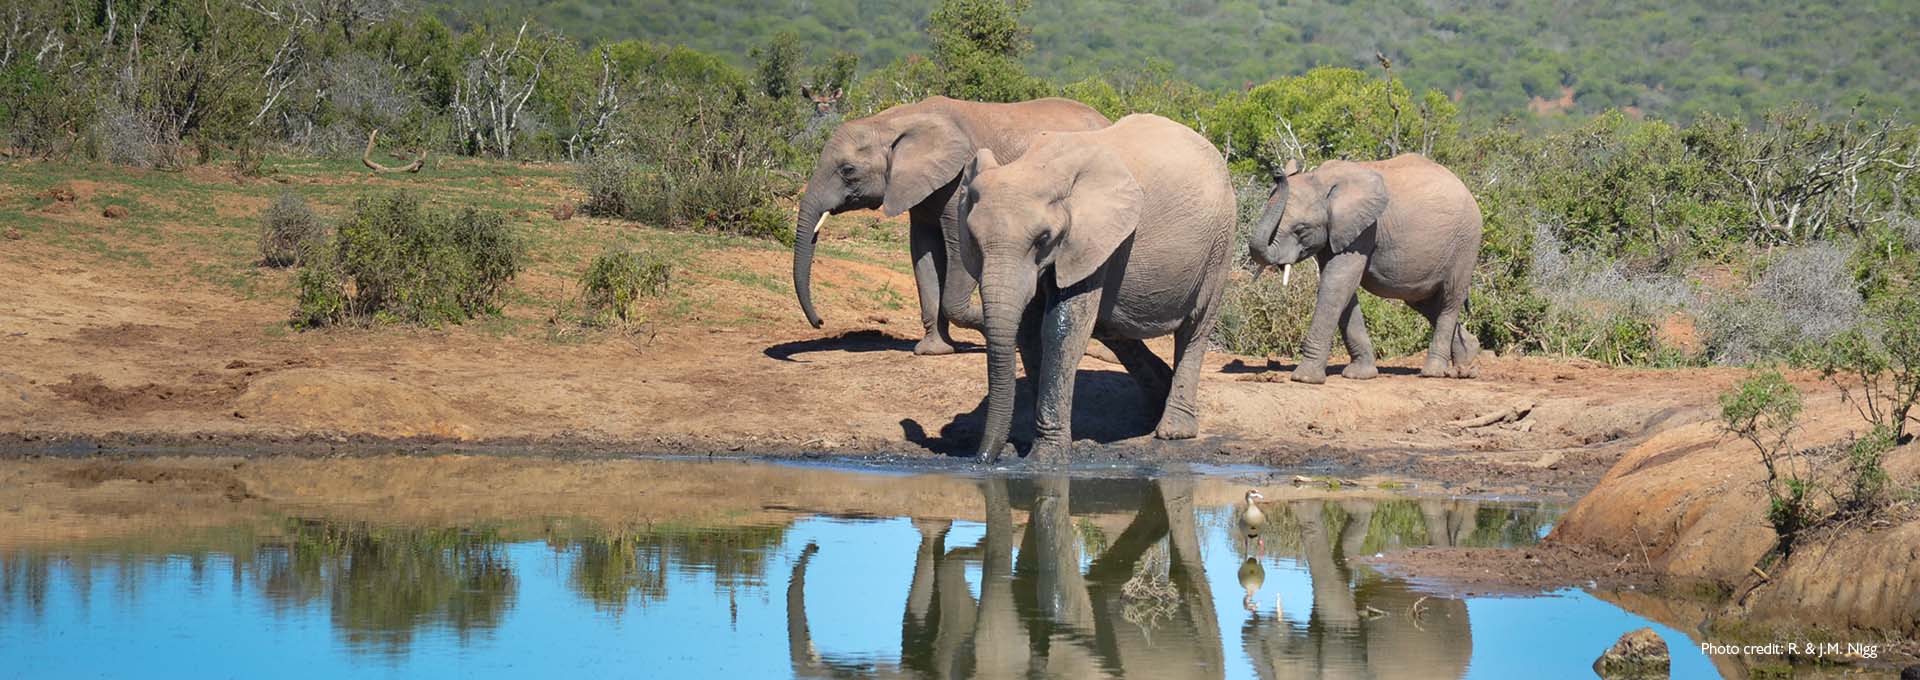 Familia de elefantes en un pequeño lago con arbustos verdes de fondo fotografiados por usuario de audífonos Bernafon Alpha